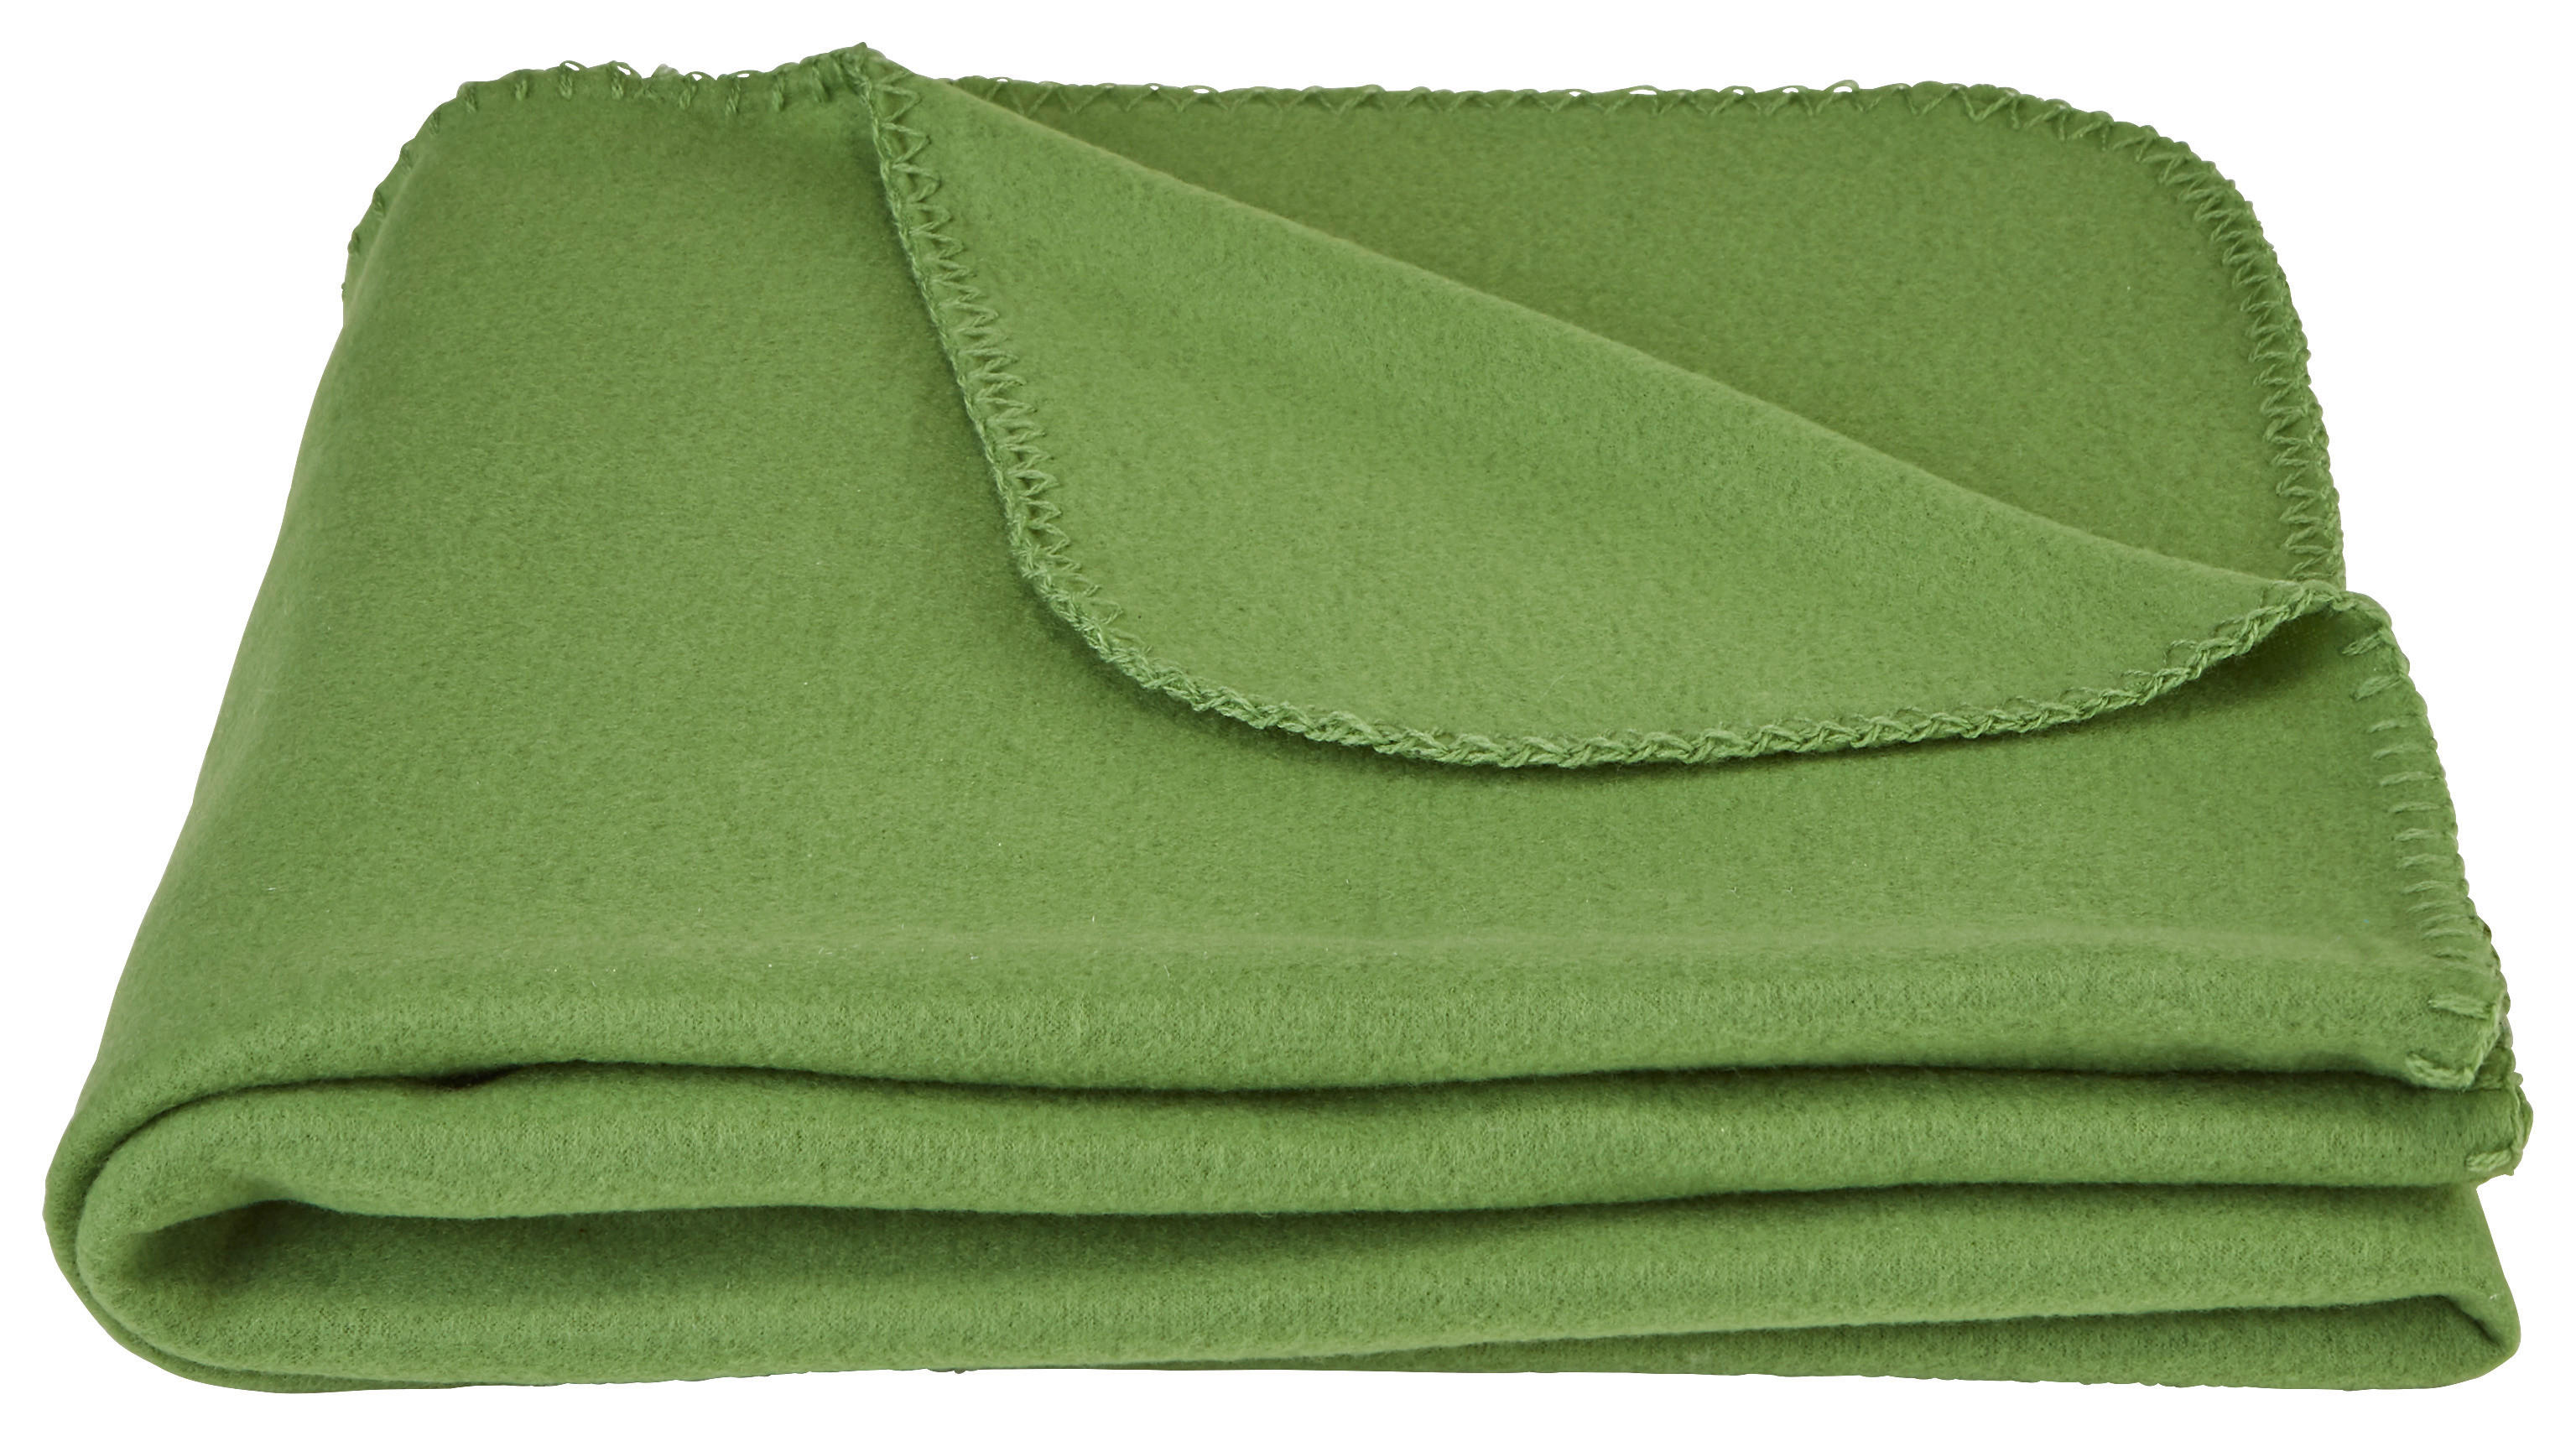 POKRIVAČ OD FLISA 125/150 cm  - zelena, Osnovno, tekstil (125/150cm) - Boxxx